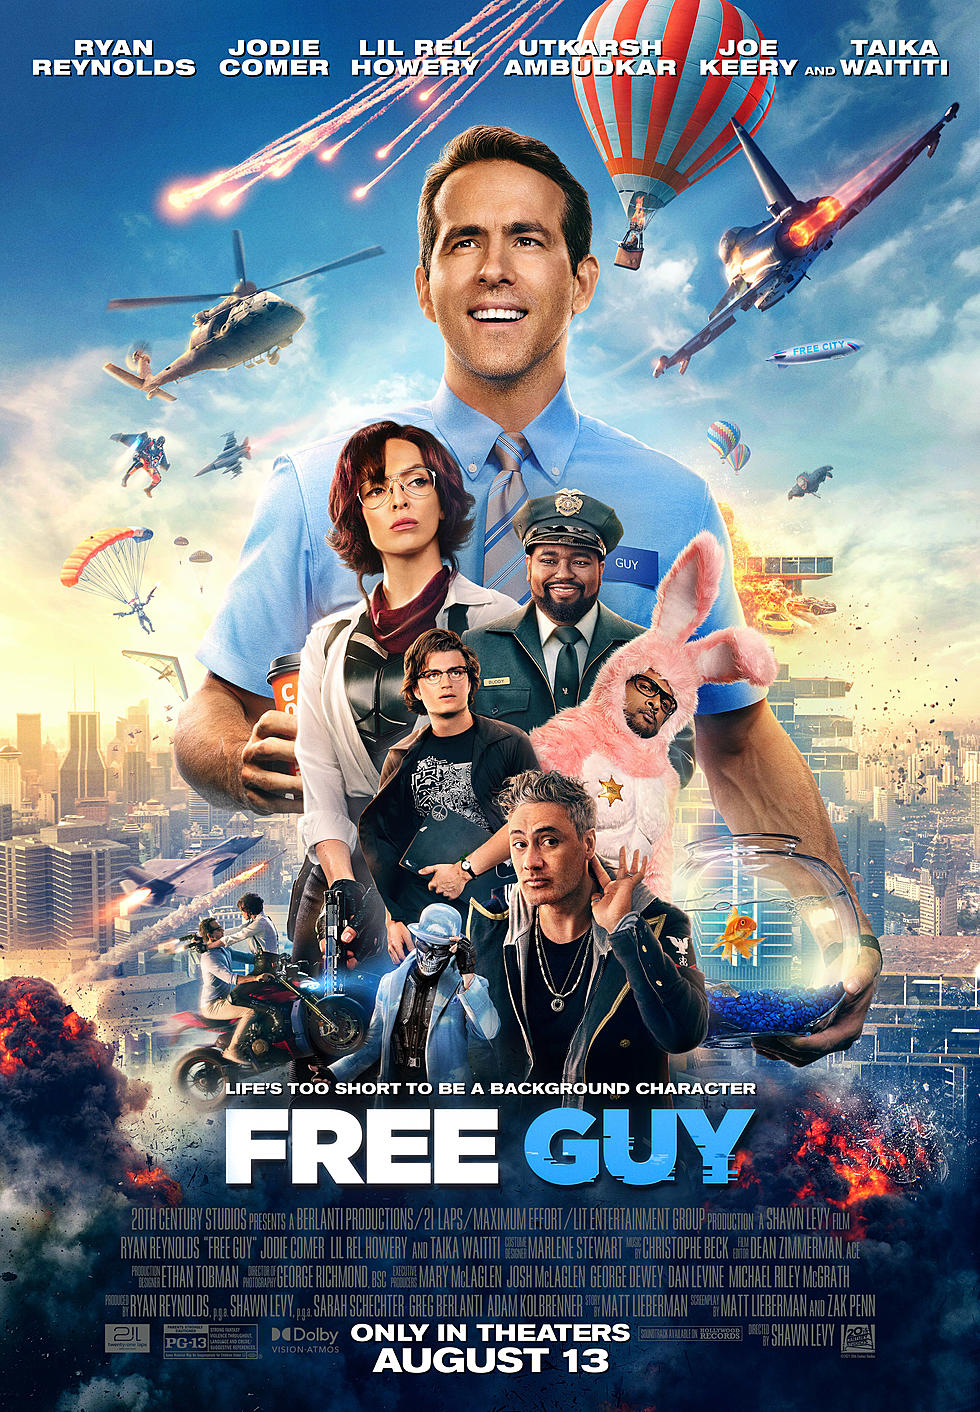 Cinema Savvy Reviews "Free Guy"